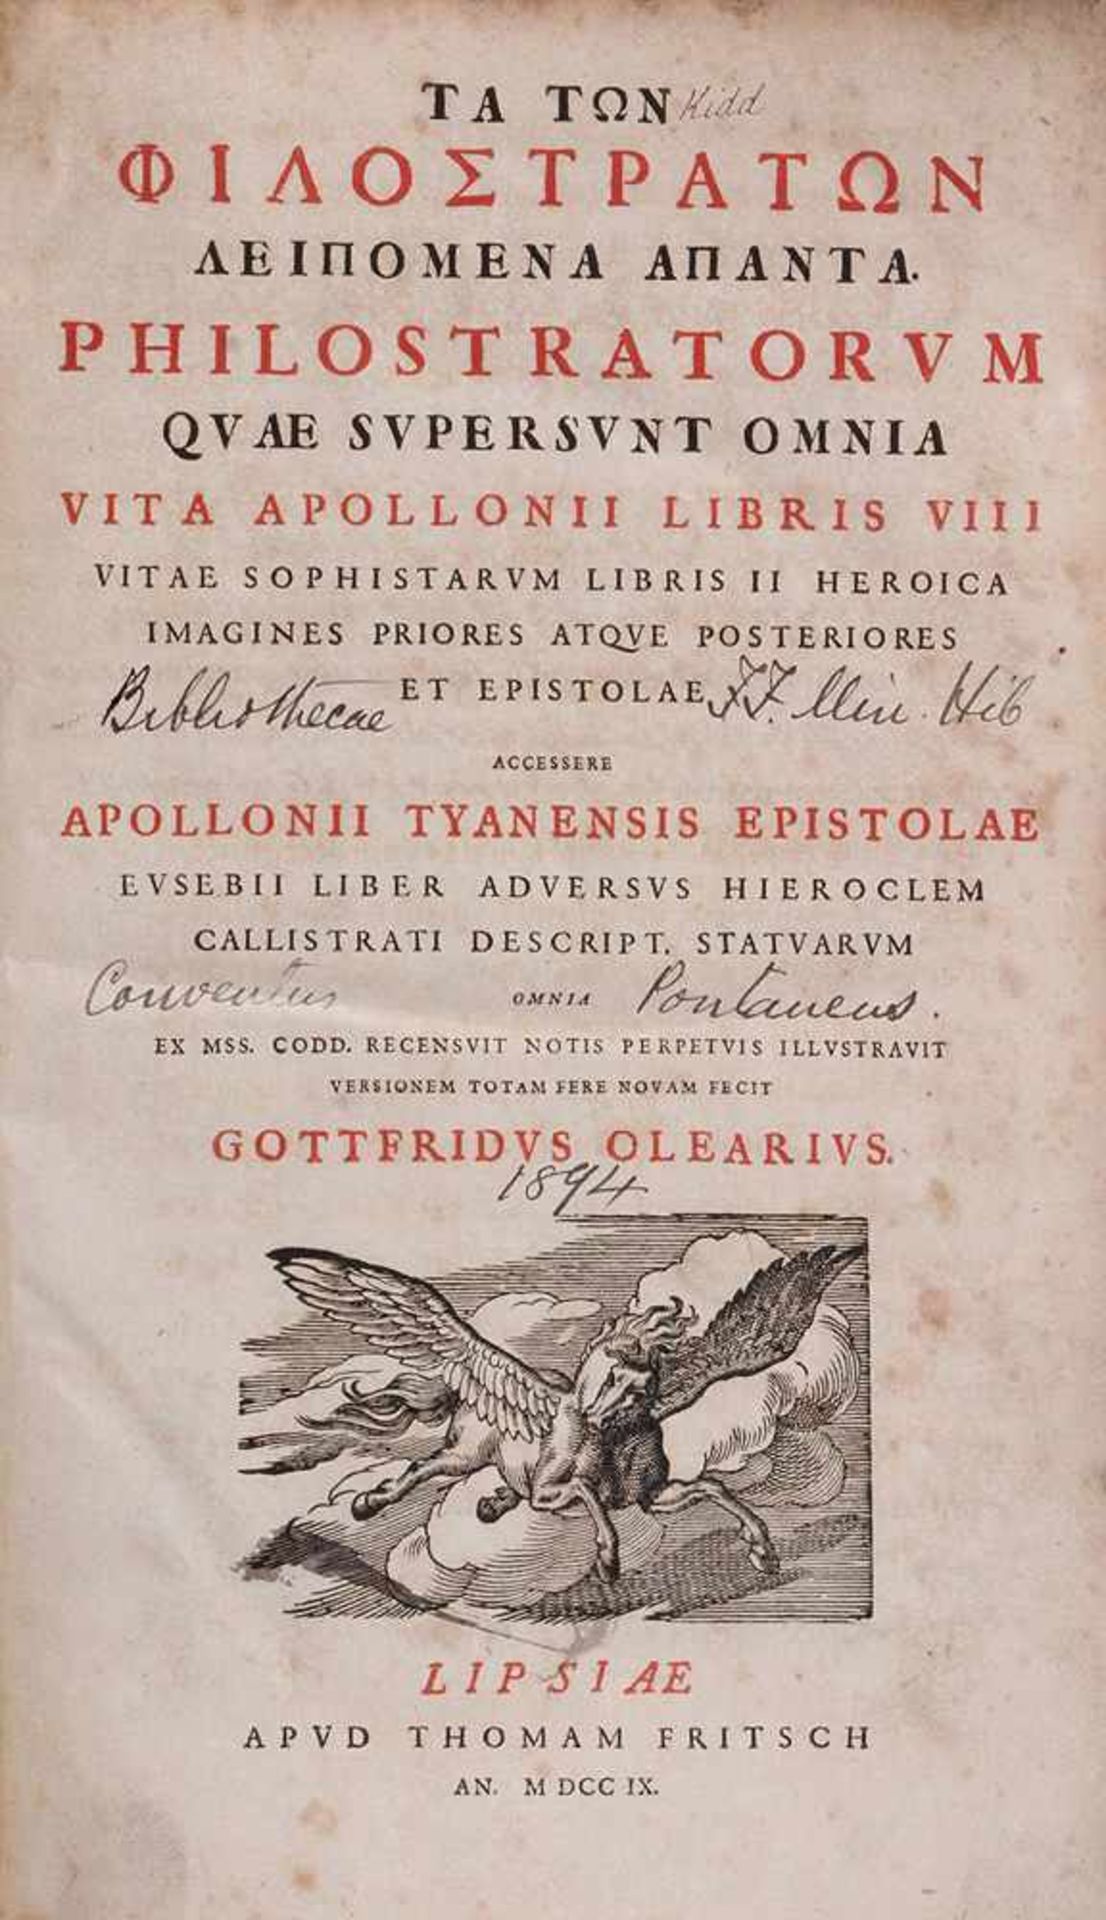 Philostratus. Quae Supersunt Omnia.Vita Apollonii Libris VIII... Leipzig, Thomas Fritsch, 1709.